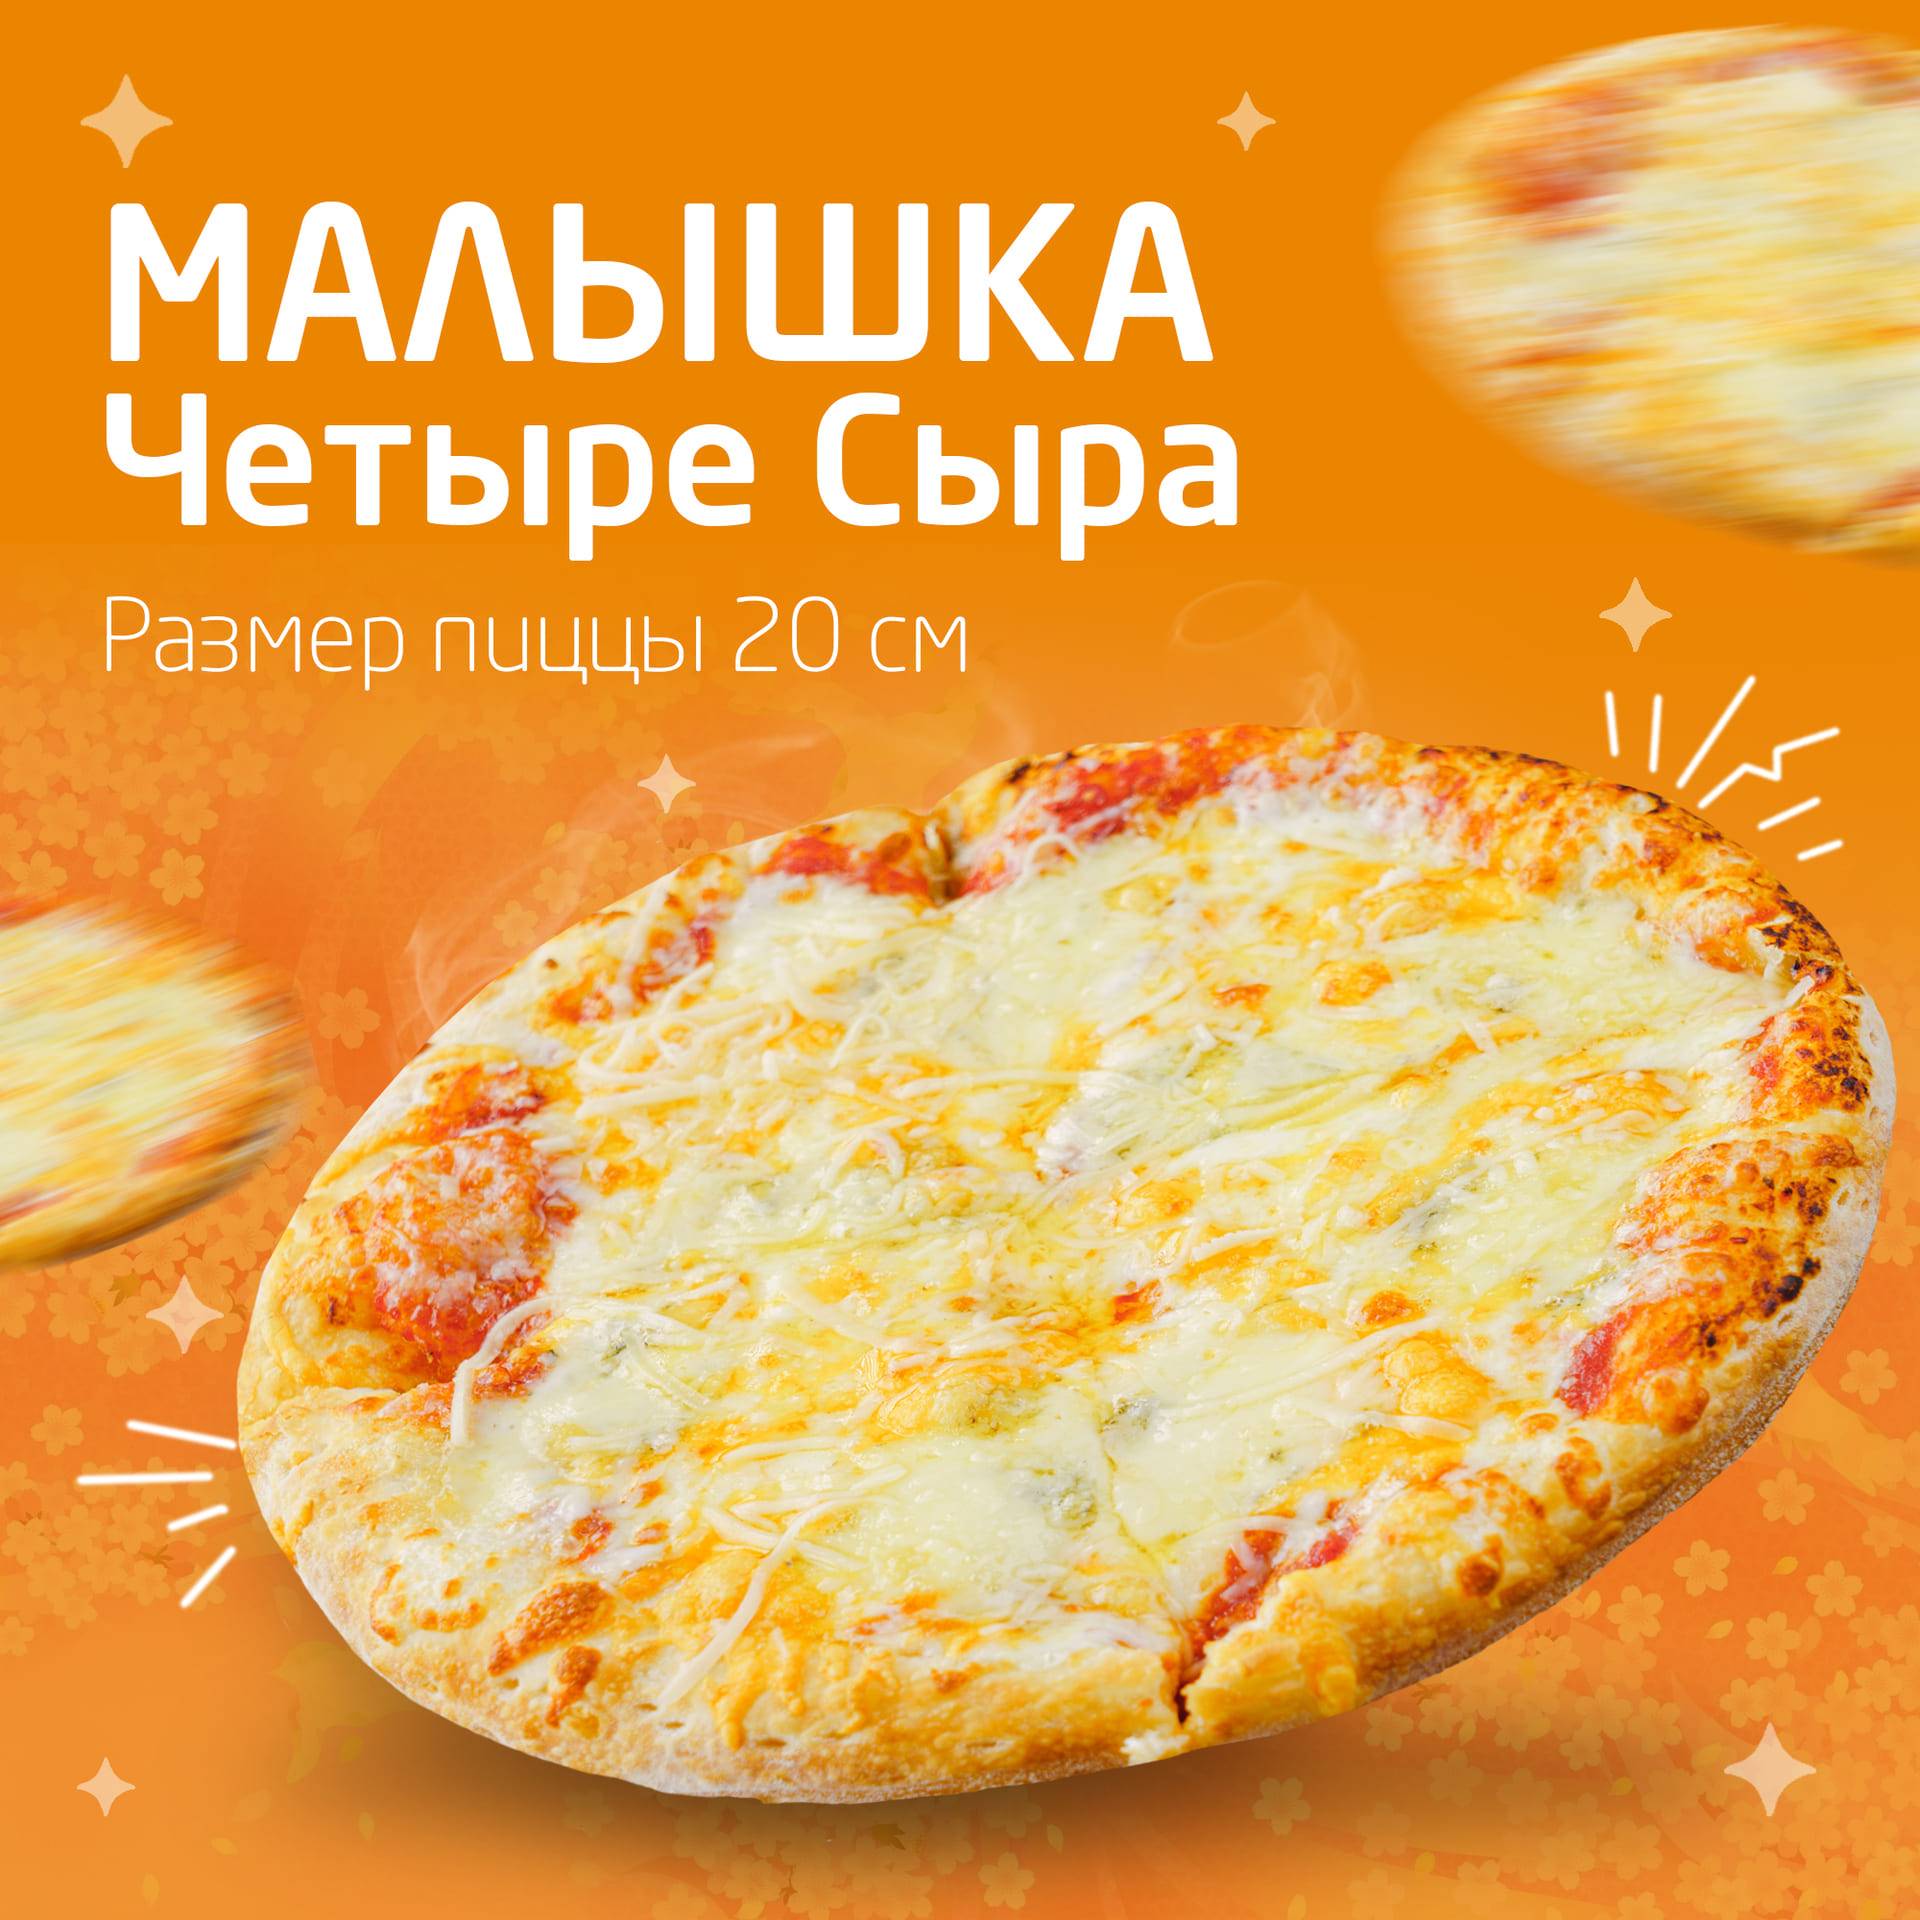 какой сыр не входит в состав пиццы четыре сыра фото 91